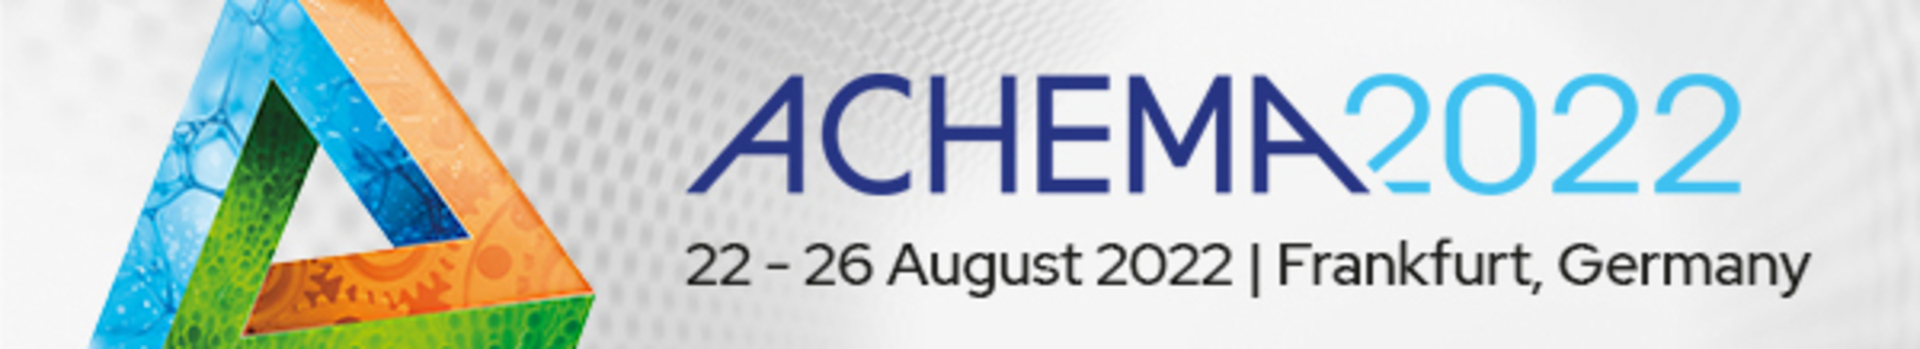 ICHEMAD – Profarb na światowym forum i targach ACHEMA 2022 we Frankfurcie nad Menem!